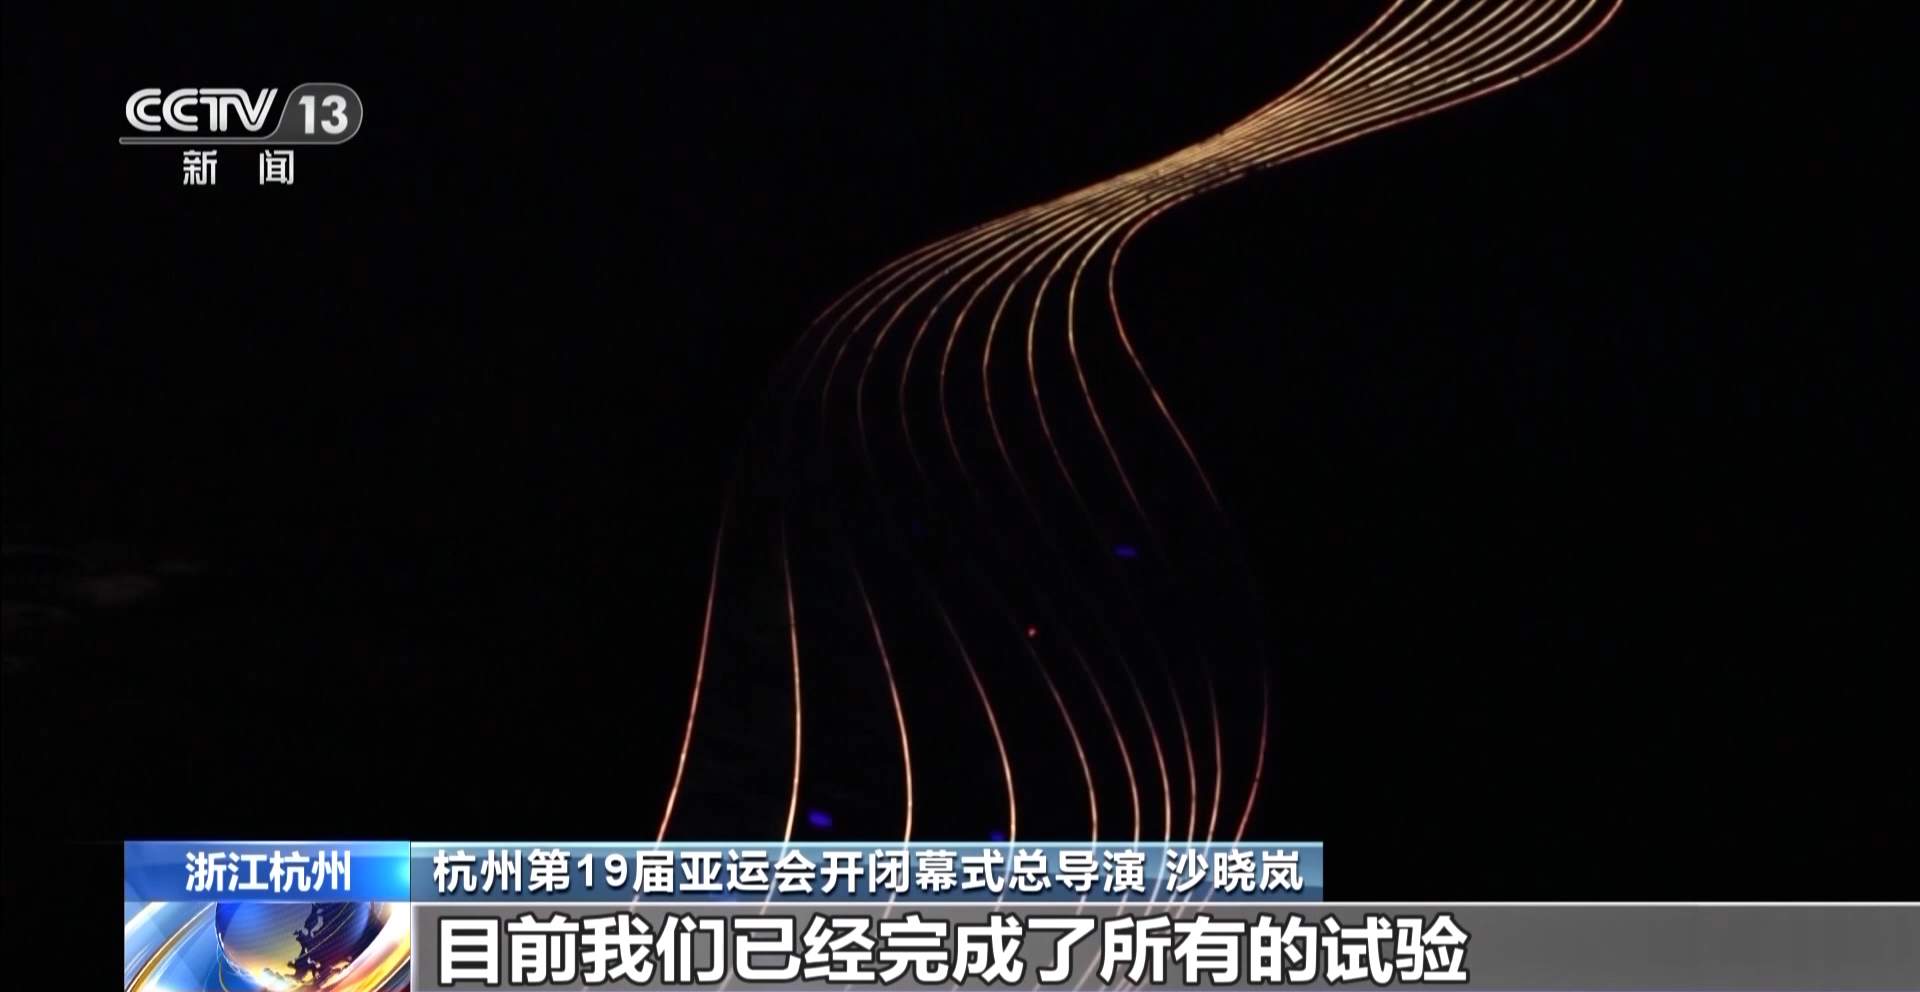 杭州亚运会开幕式第一次正式彩排顺利完成 点火方式创意满满